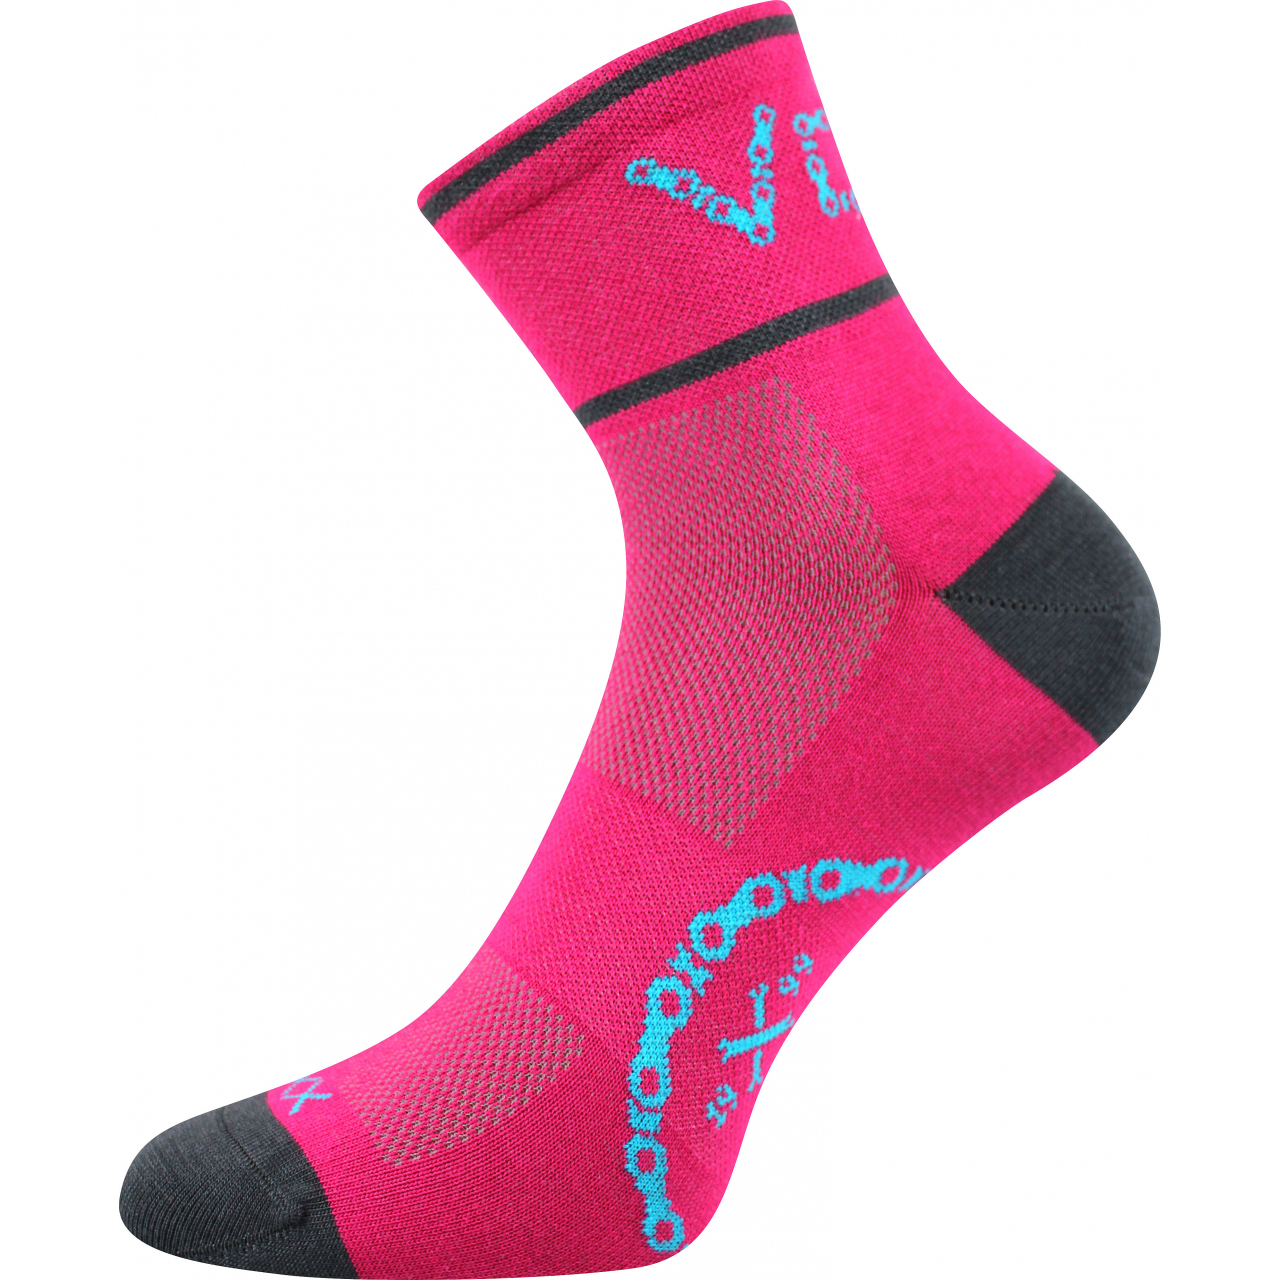 Ponožky sportovní unisex Voxx Slavix - tmavě růžové, 35-38